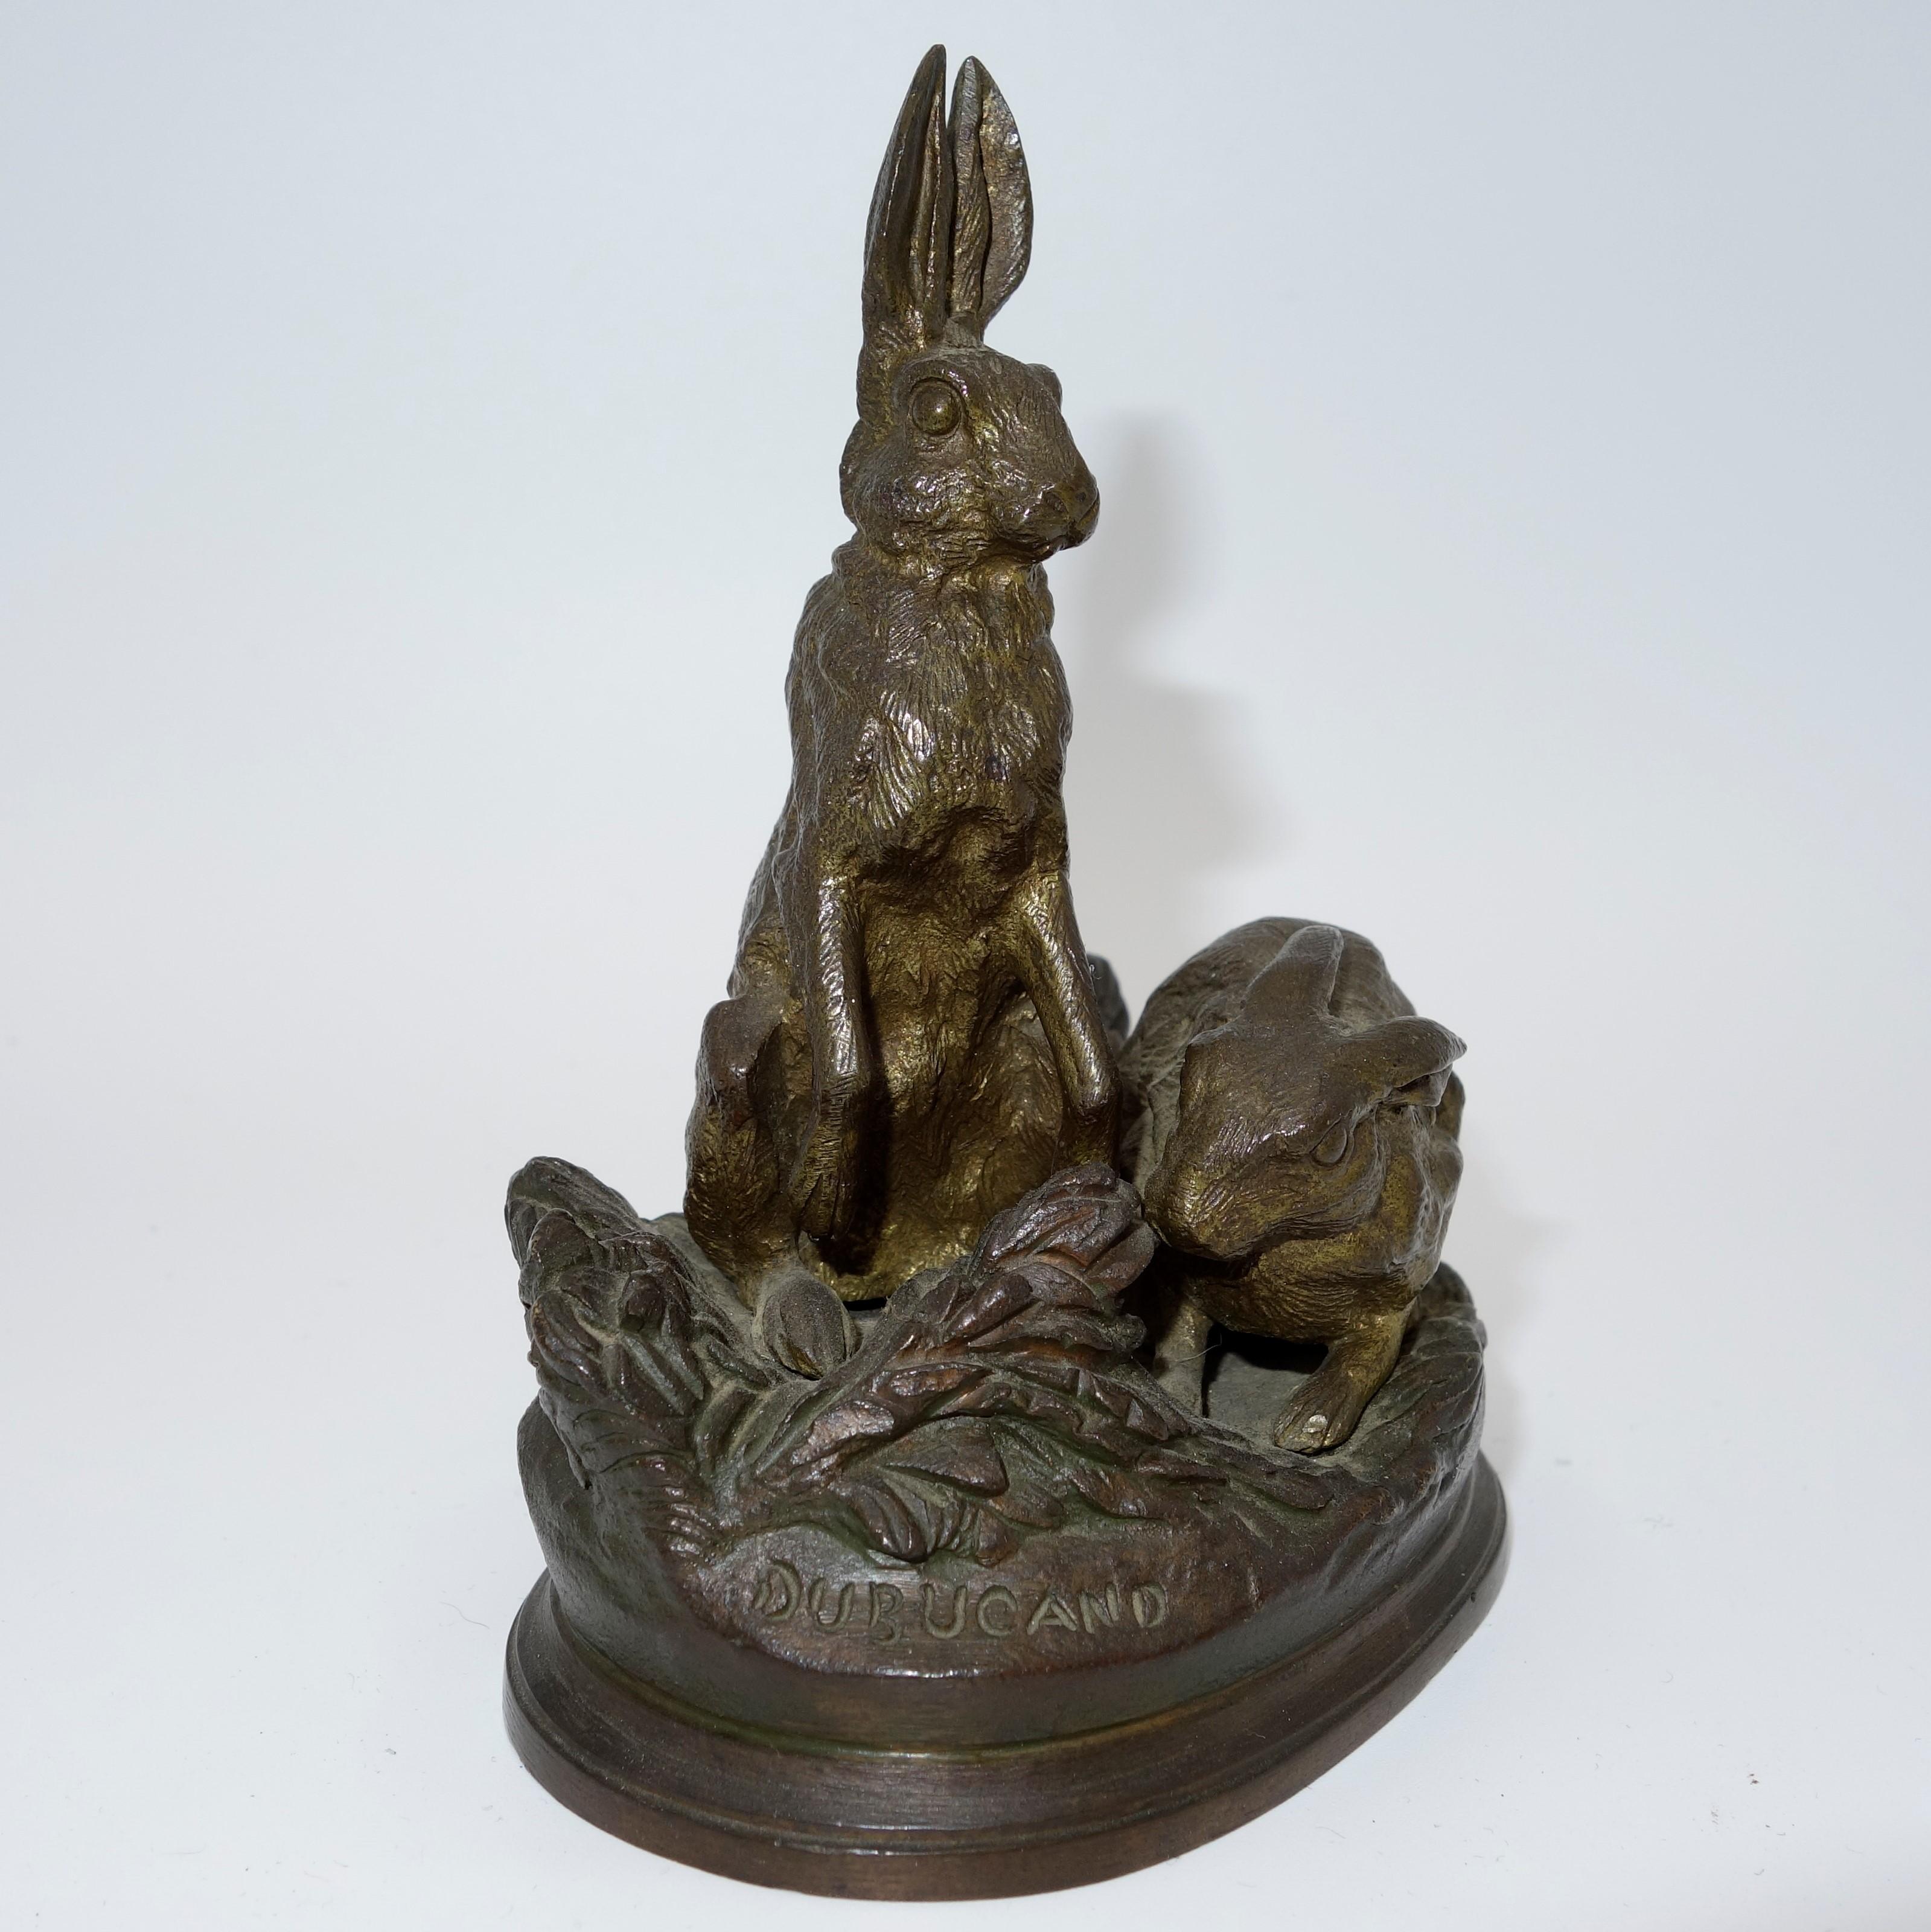 Bronze animalier français du 19ème siècle représentant deux moineaux sur une base naturaliste - Sculpture de Alfred Dubucand